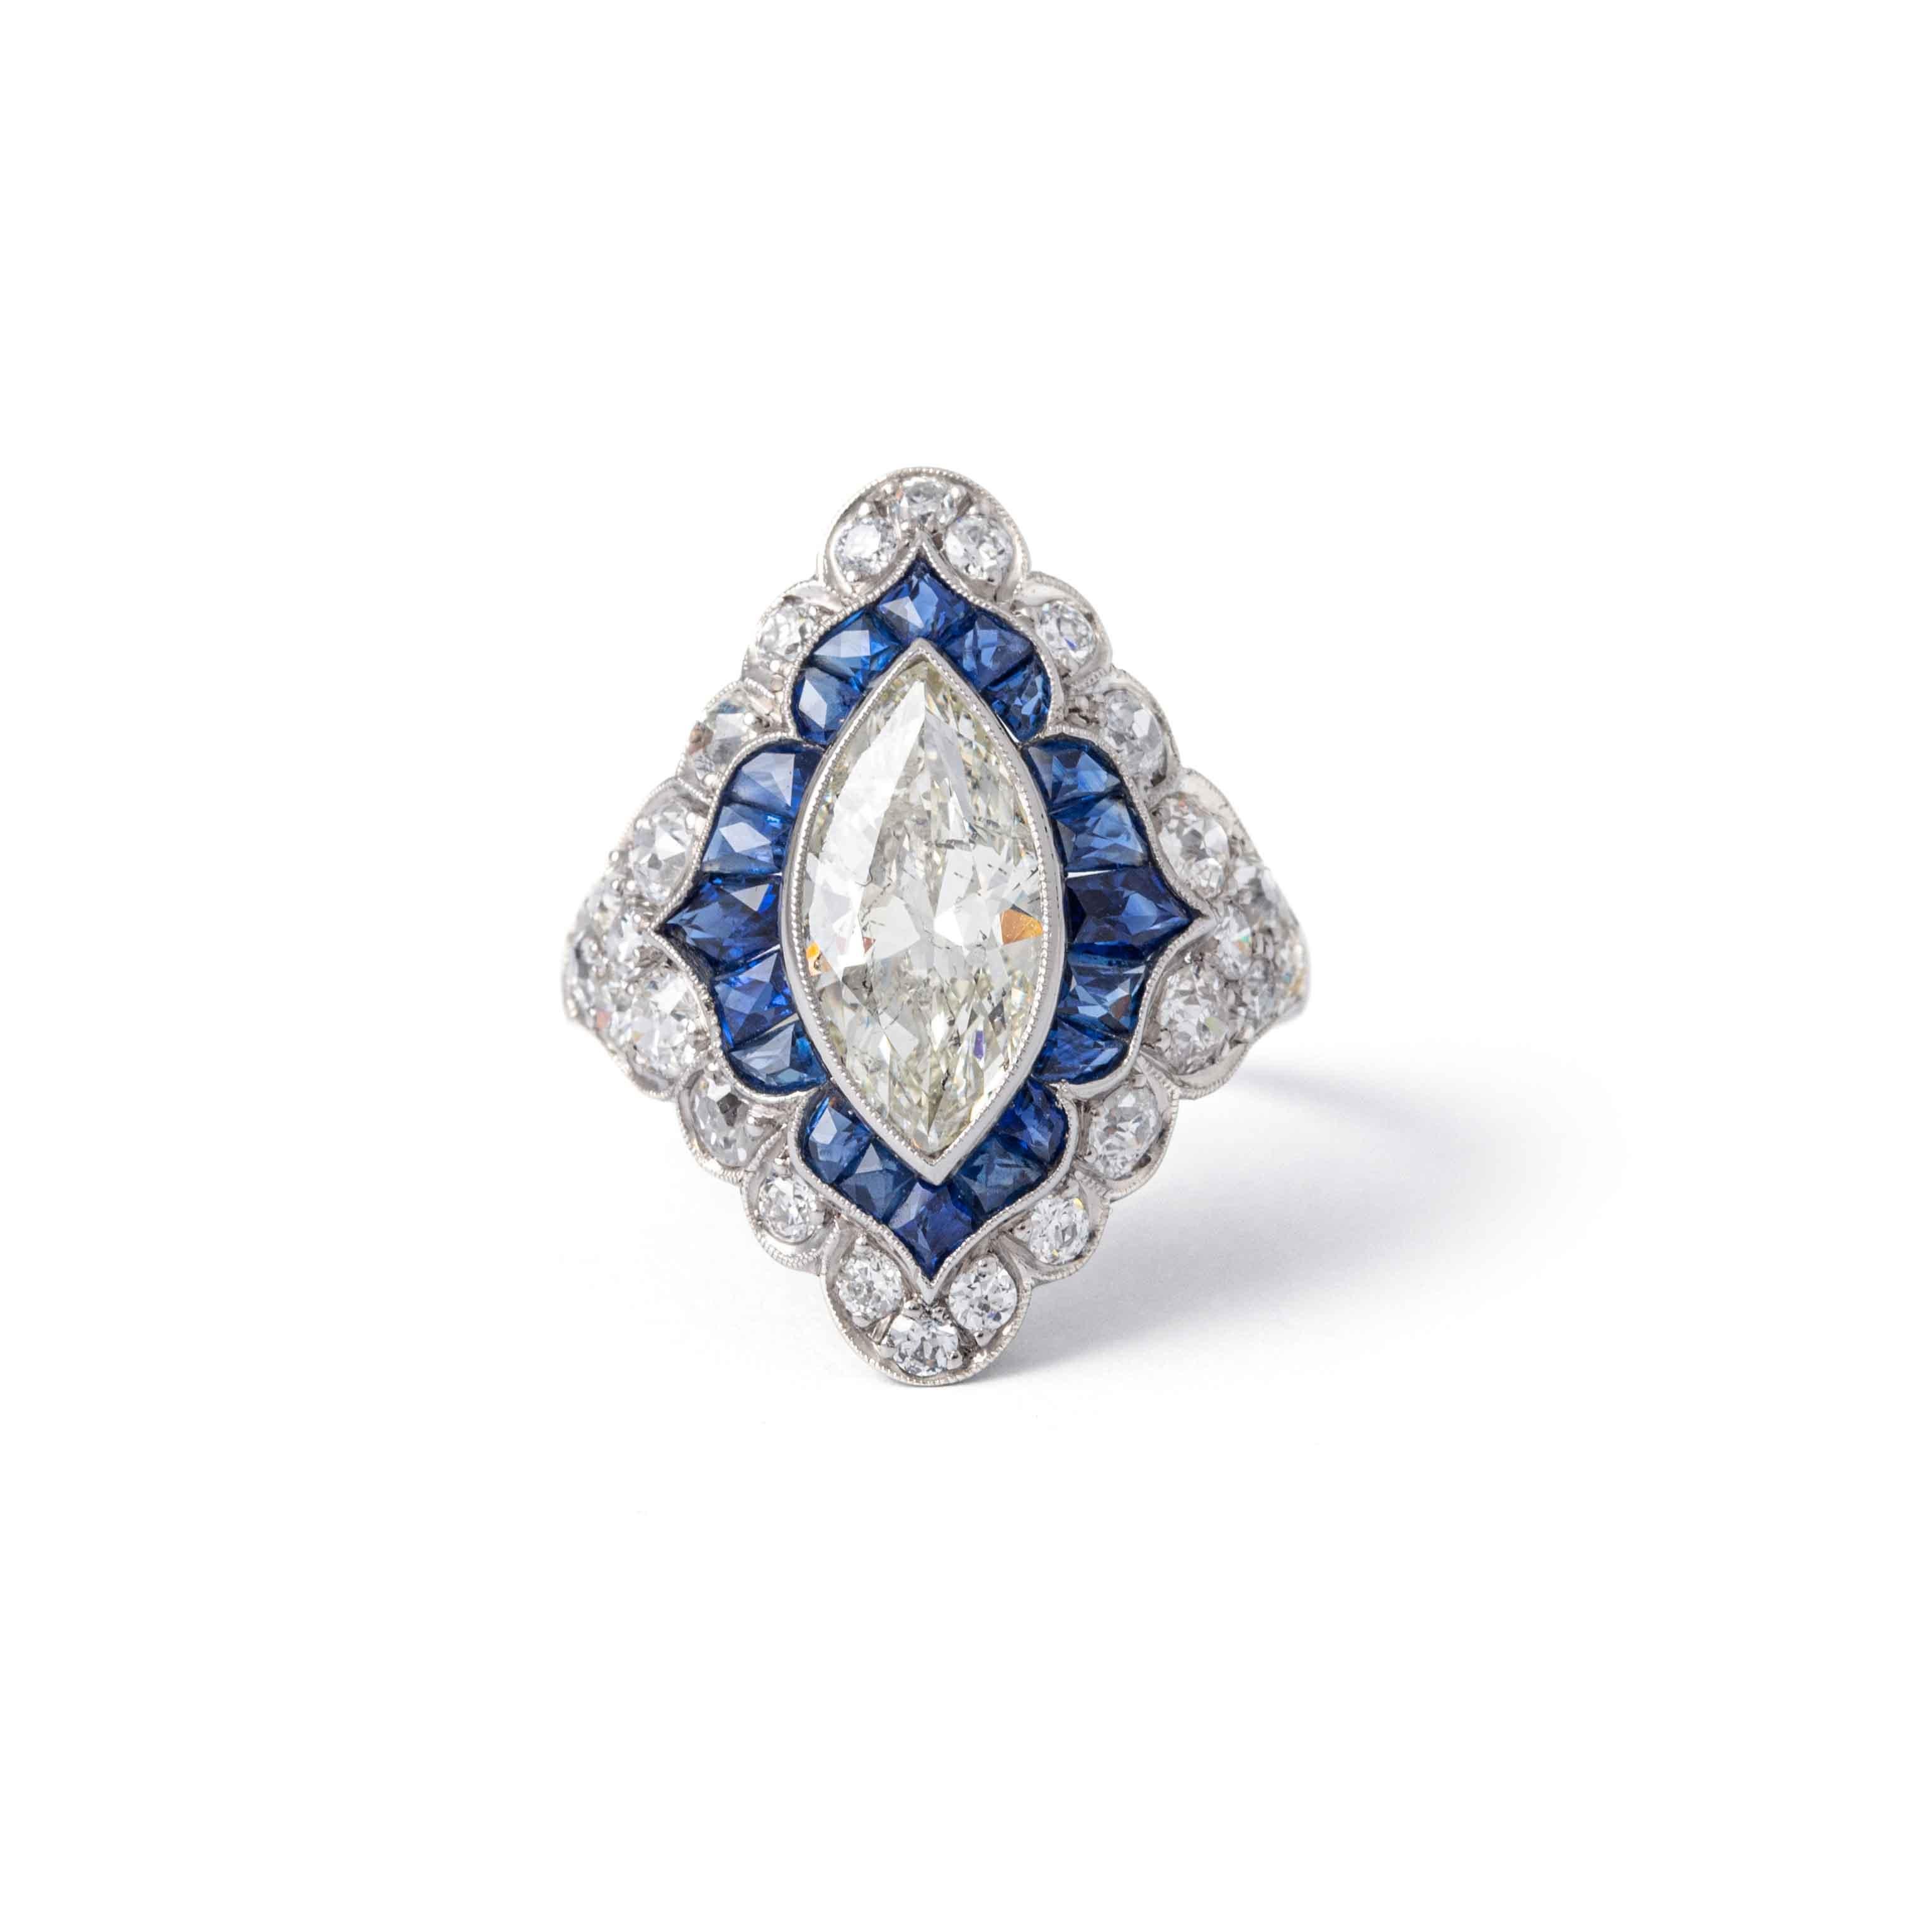 Art Deco über 2 Karat Diamant Marquise Saphir Platin Ring.
Marquise Diamant ca. 2,20 Karat M P1, blauer Saphir ca. 0,80 Karat und Diamanten pflastern 1,20 Karat.

Größe: 56 / 7.75 US,
Gesamtgewicht: 6,55 Gramm.